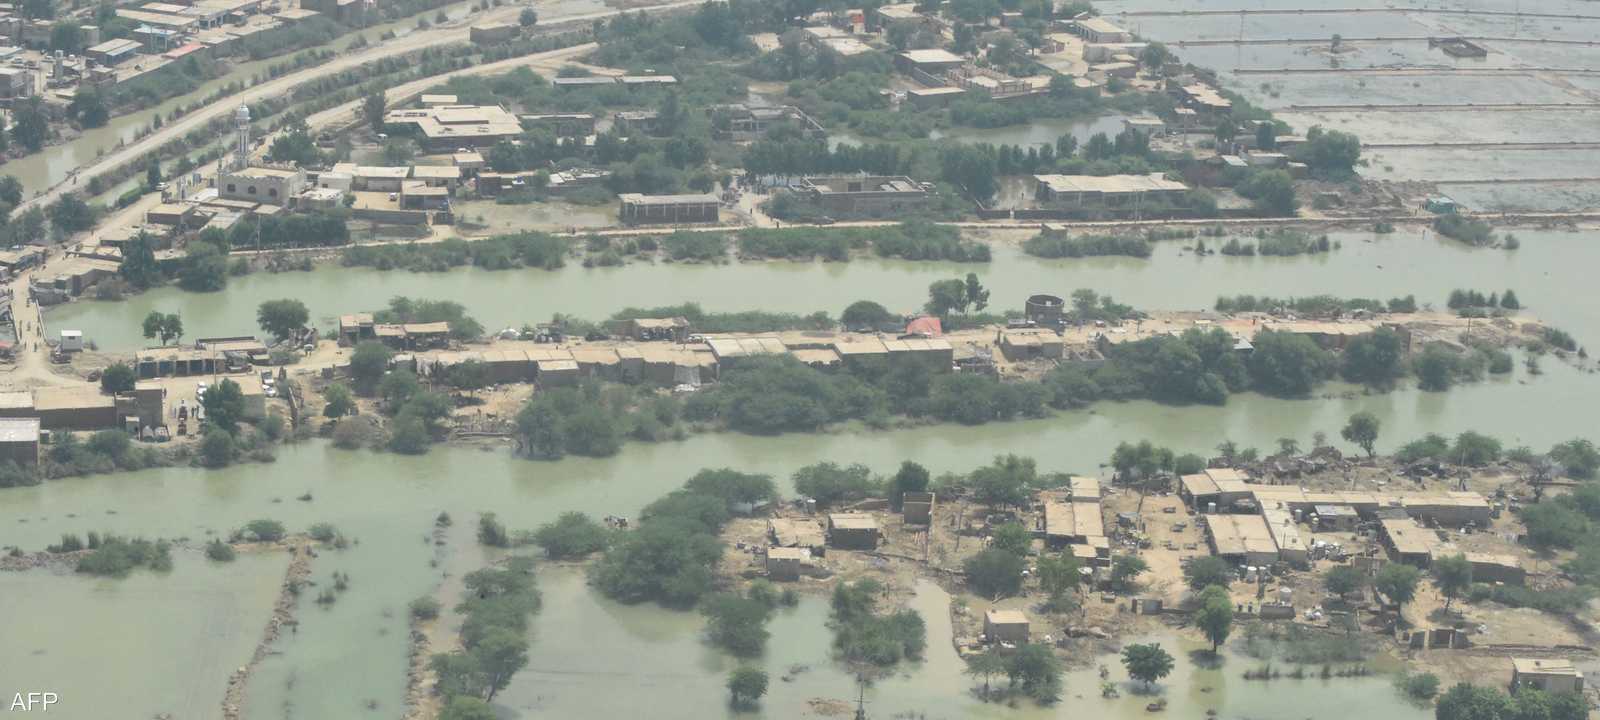 الفيضانات في باكستان خلفت الكثير من الأضرار المادية والبشرية